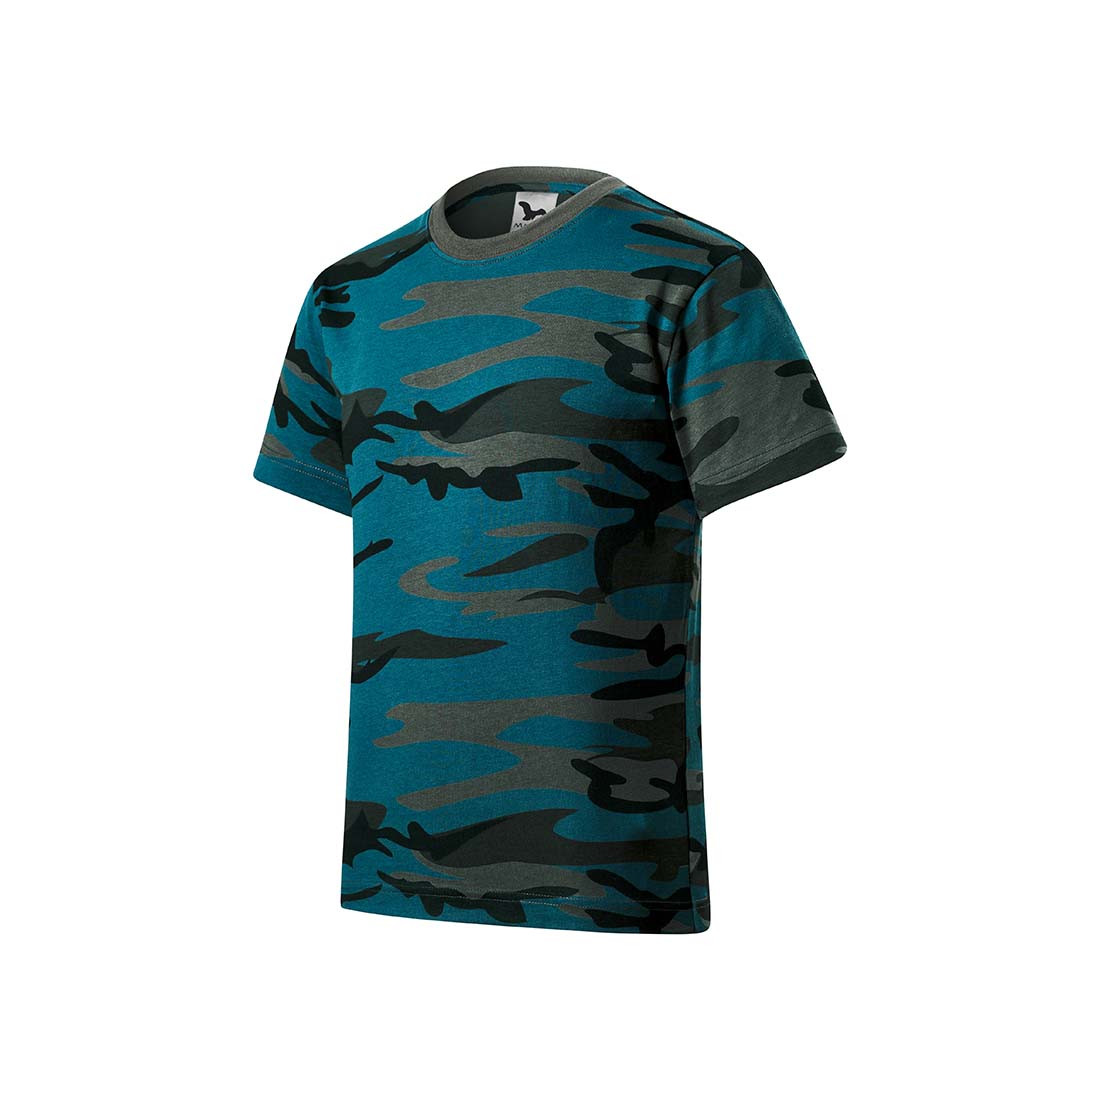 Maglietta camouflage per bambini - Abbigliamento di protezione